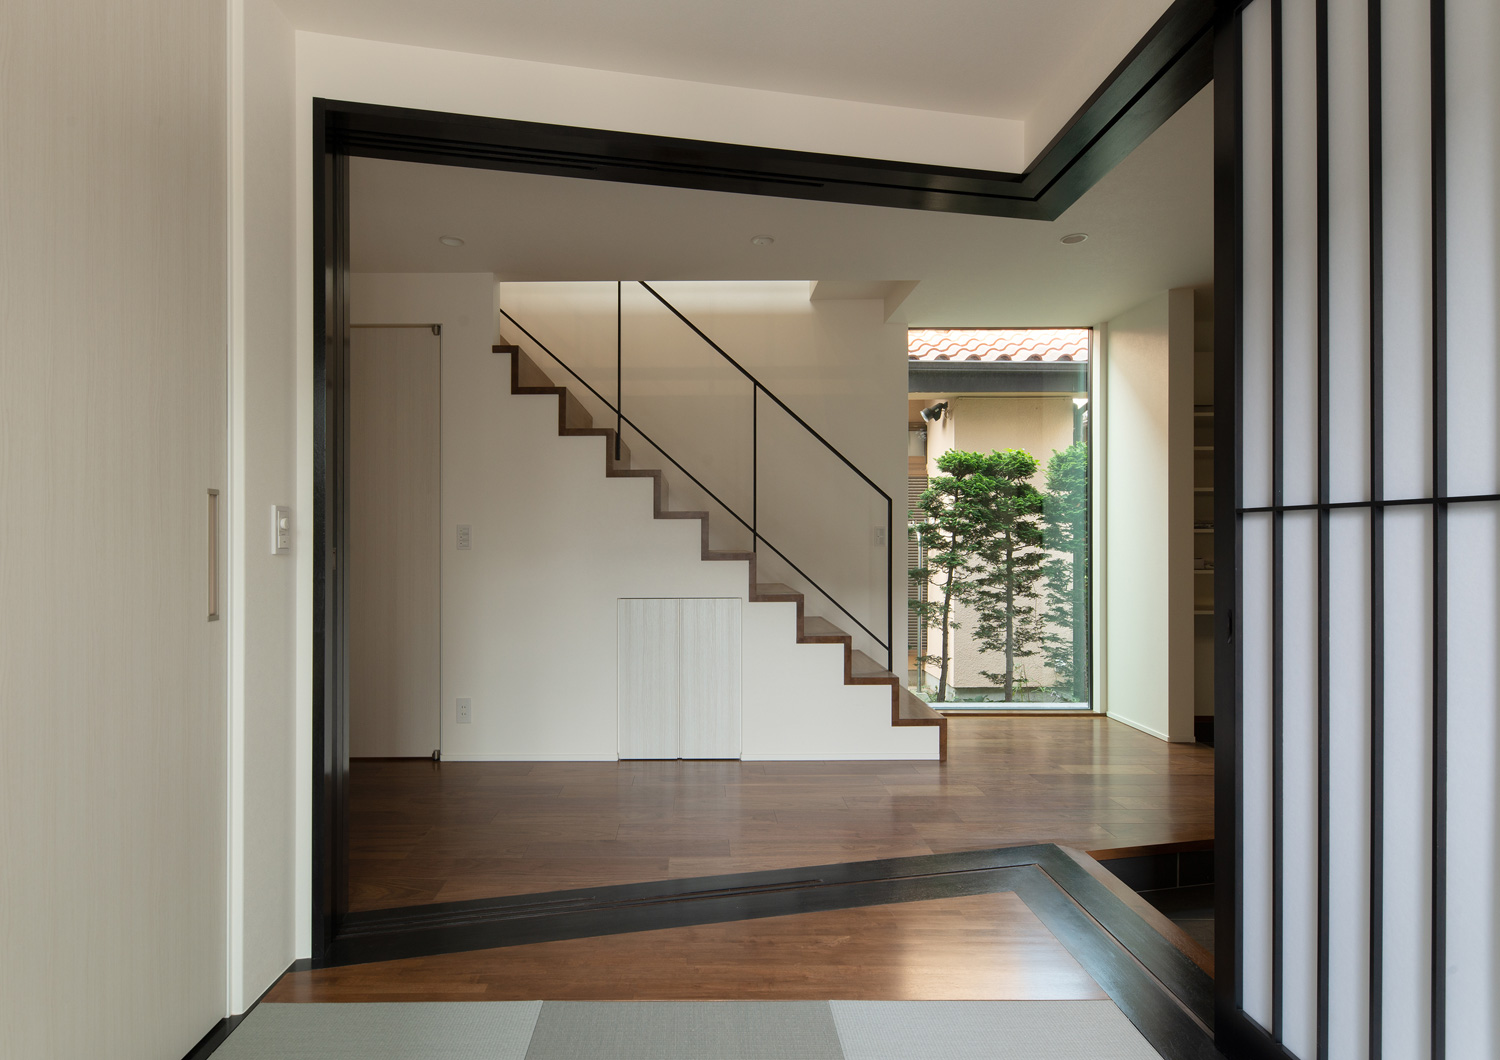 箱型階段のある廊下と黒枠の障子で仕切られた和室・デザイン住宅